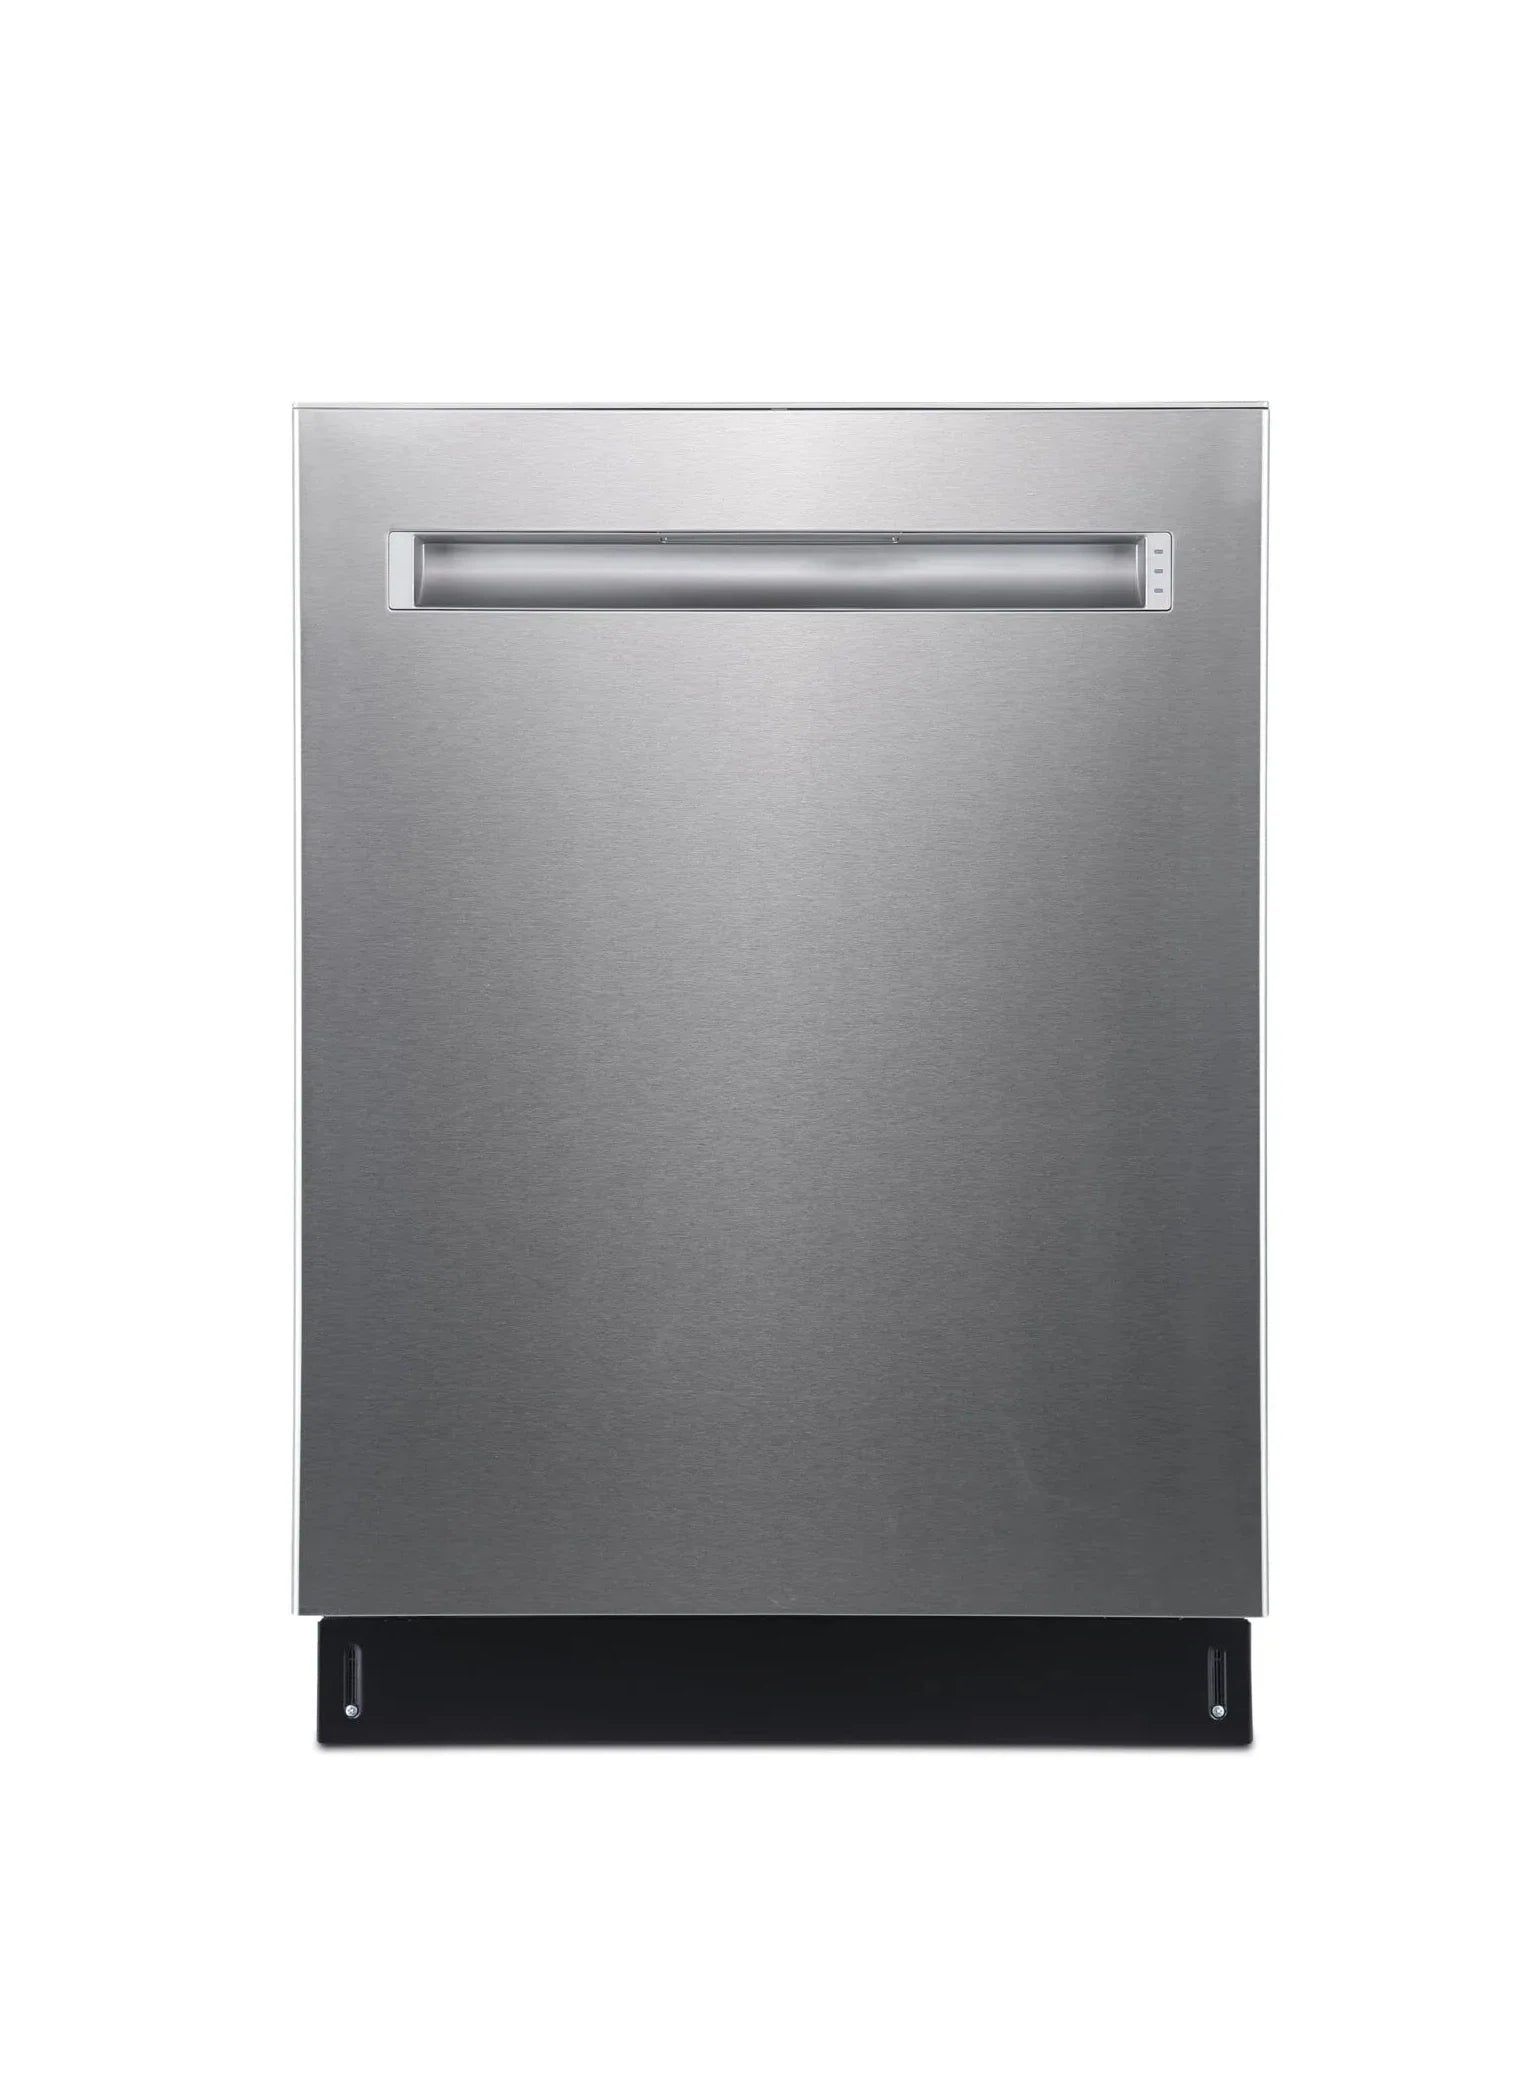 GE Profile Dishwashers 24" Stainless Steel PBP665SSPFS - Appliance Bazaar